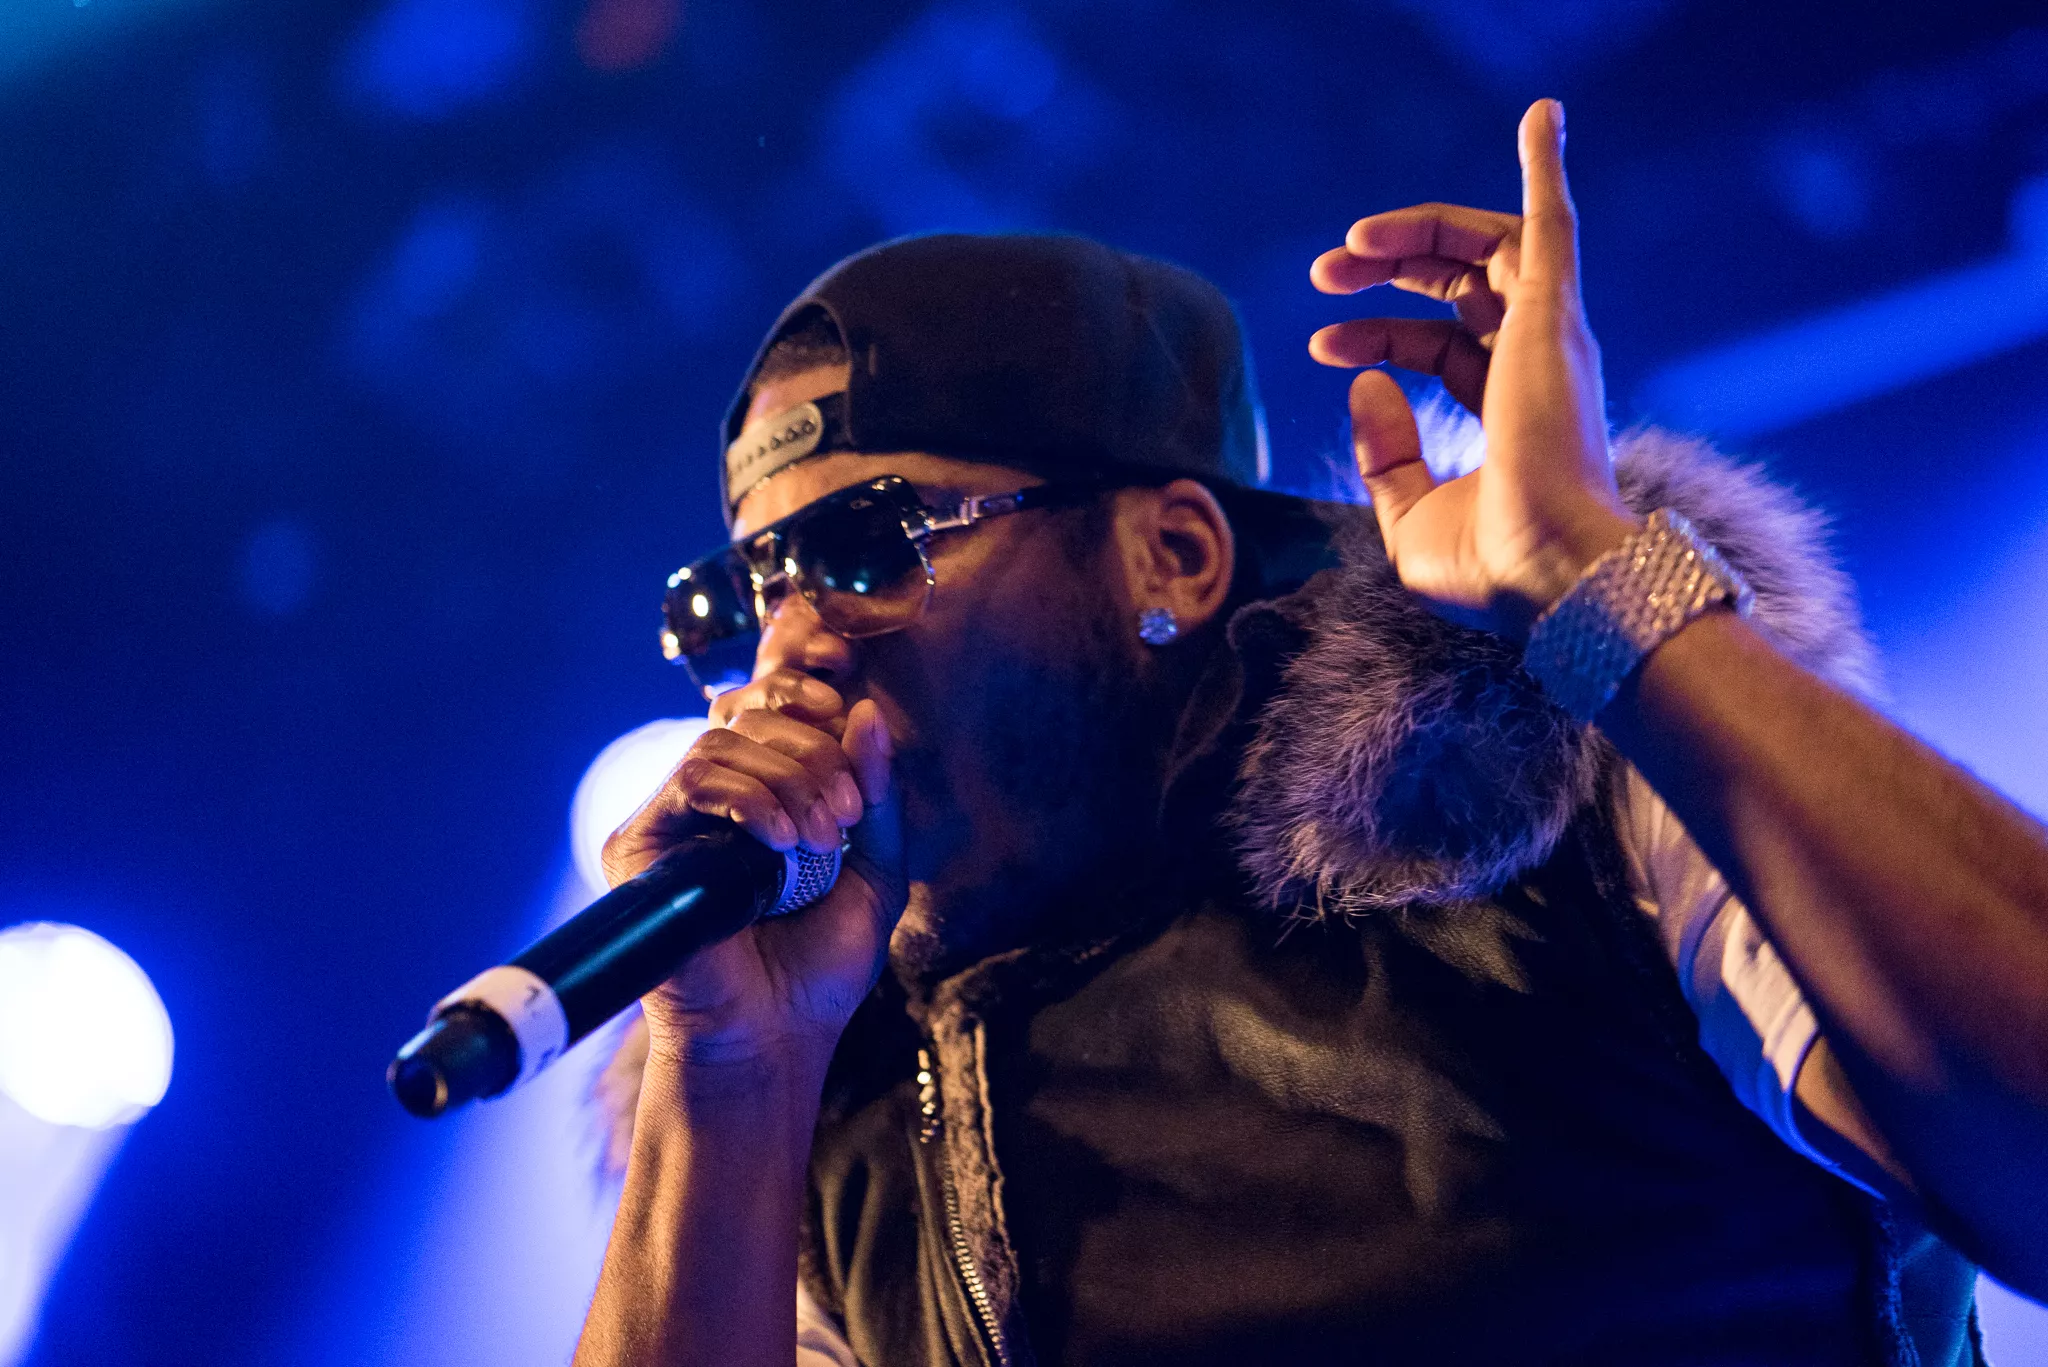 Hiphop-ikonet Nelly giver dansk koncert